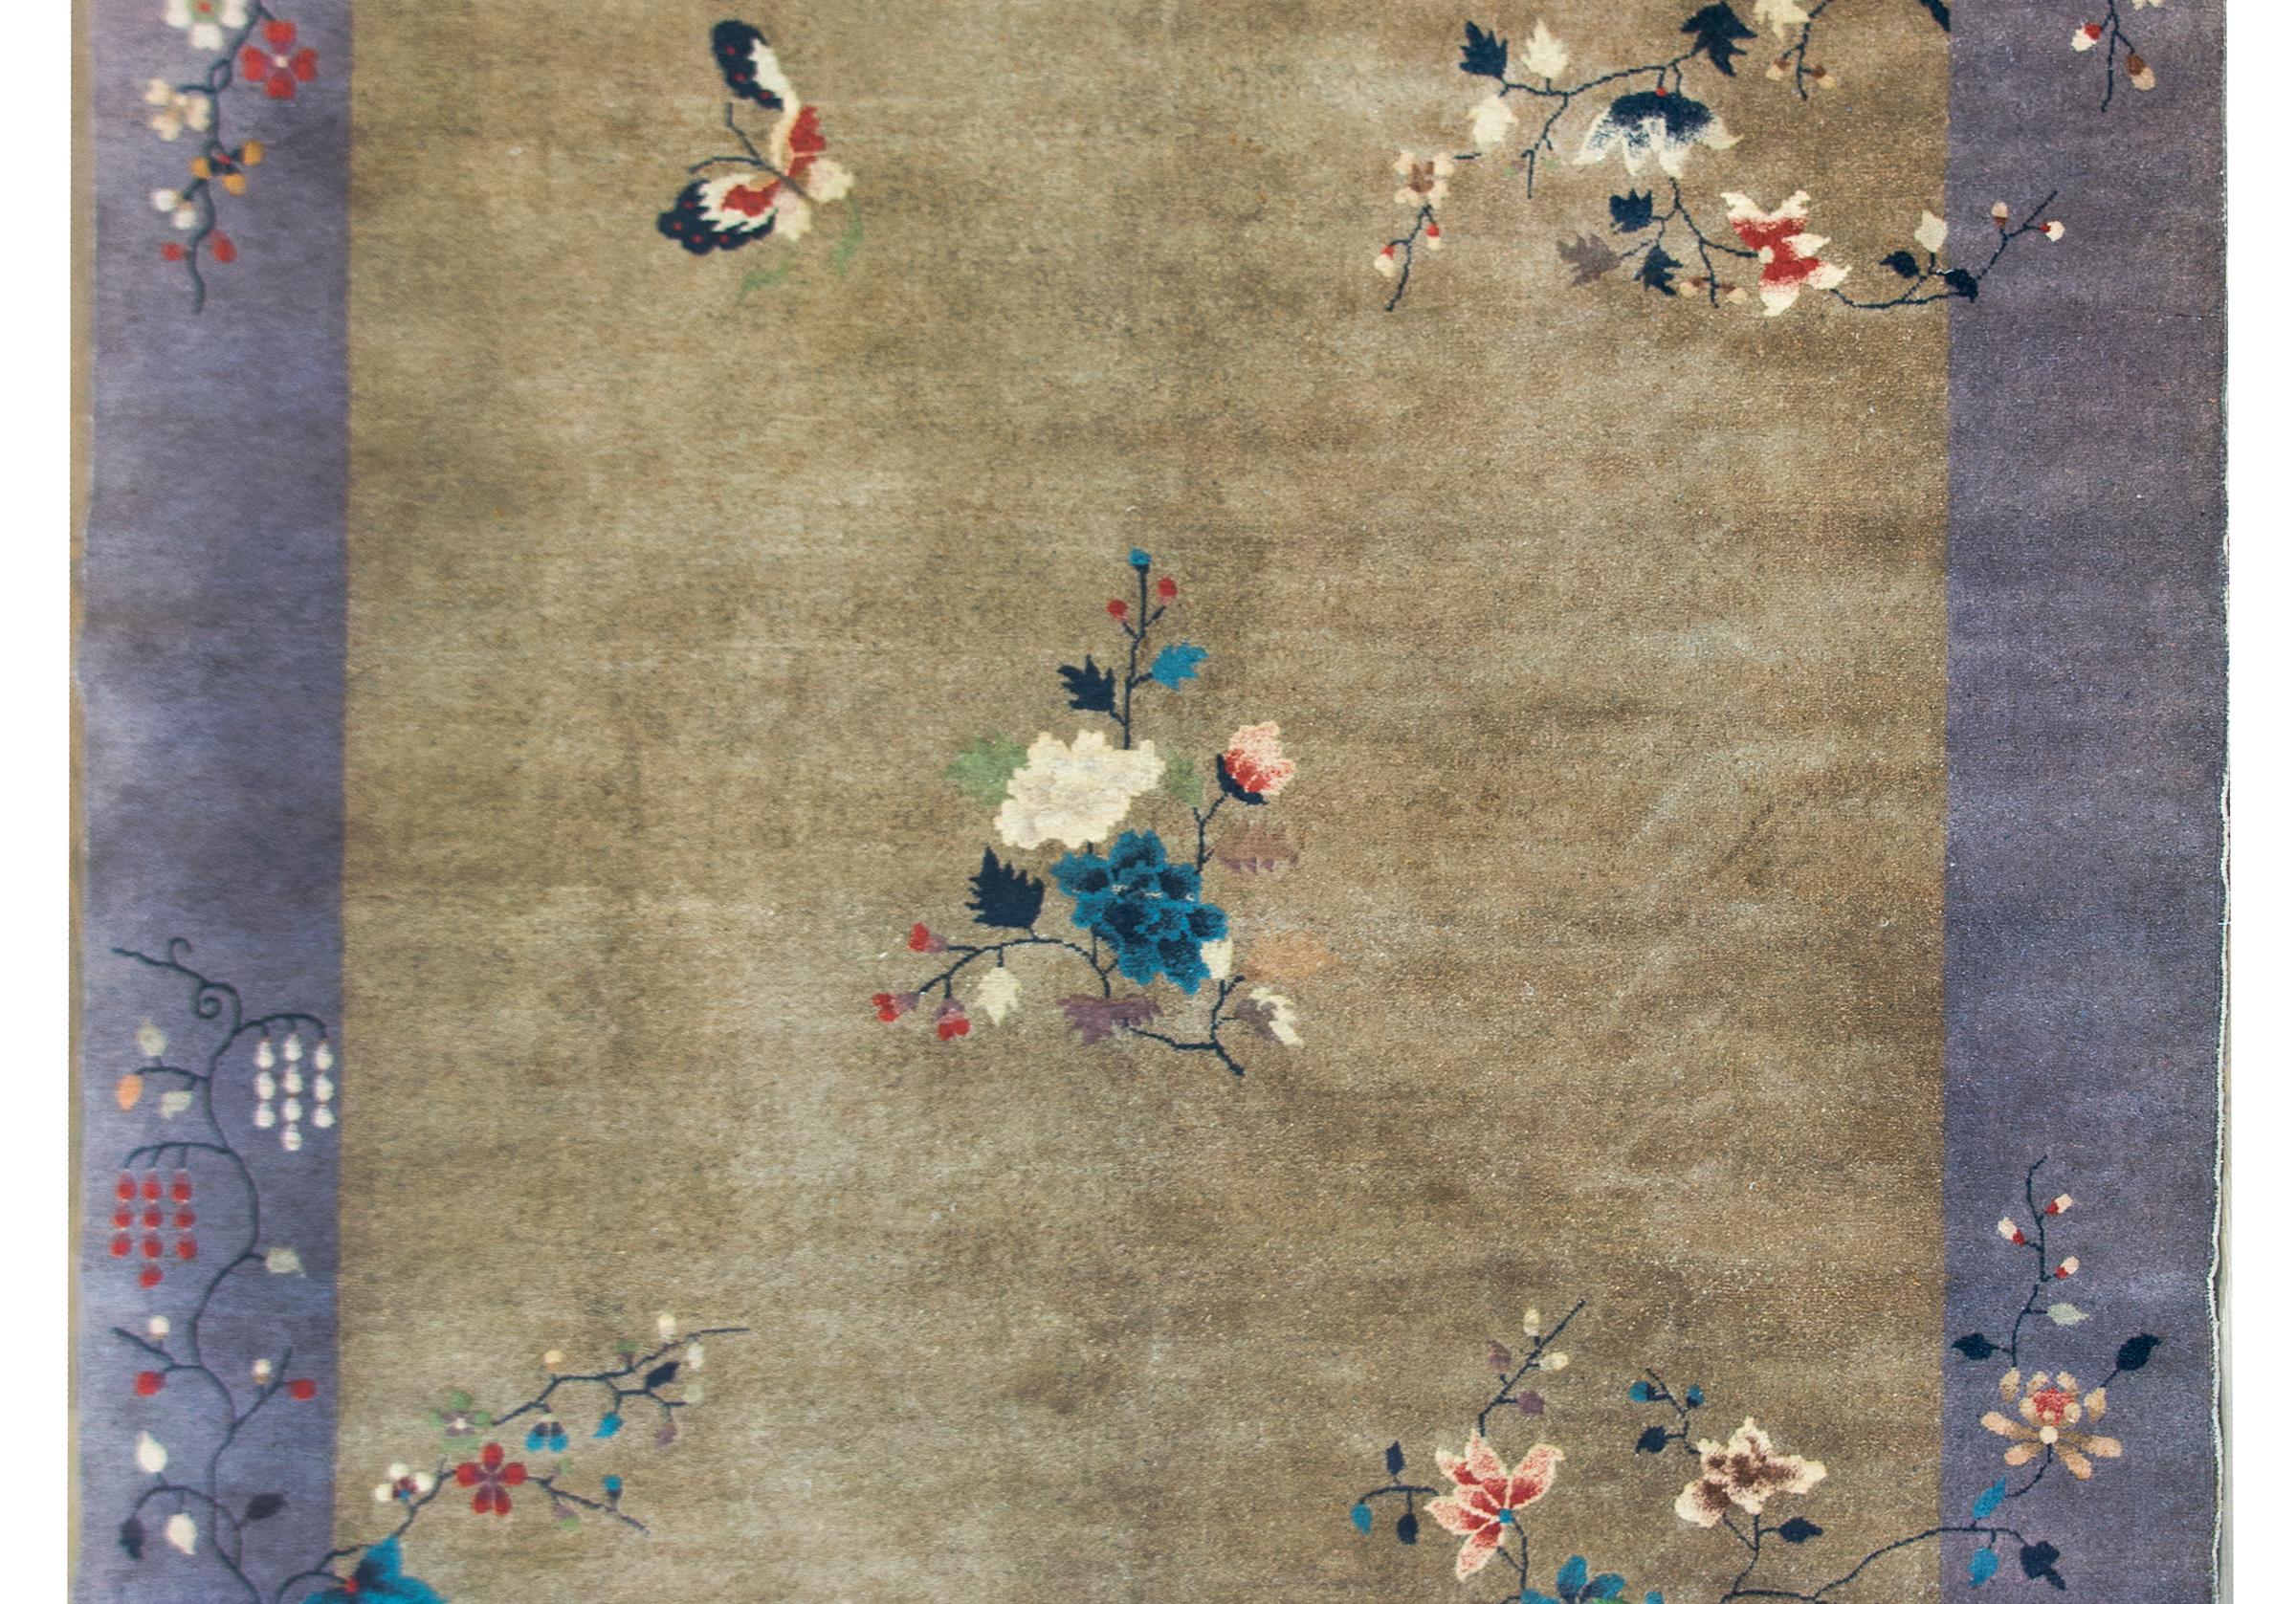 Ein wunderbarer chinesischer Art-Déco-Teppich aus dem frühen 20. Jahrhundert mit einem schicken grauen Feld, das von einer weiteren grauen Bordüre umgeben ist und mit unzähligen verheißungsvollen Blumen wie Pfingstrosen, Glyzinien, Chrysanthemen und